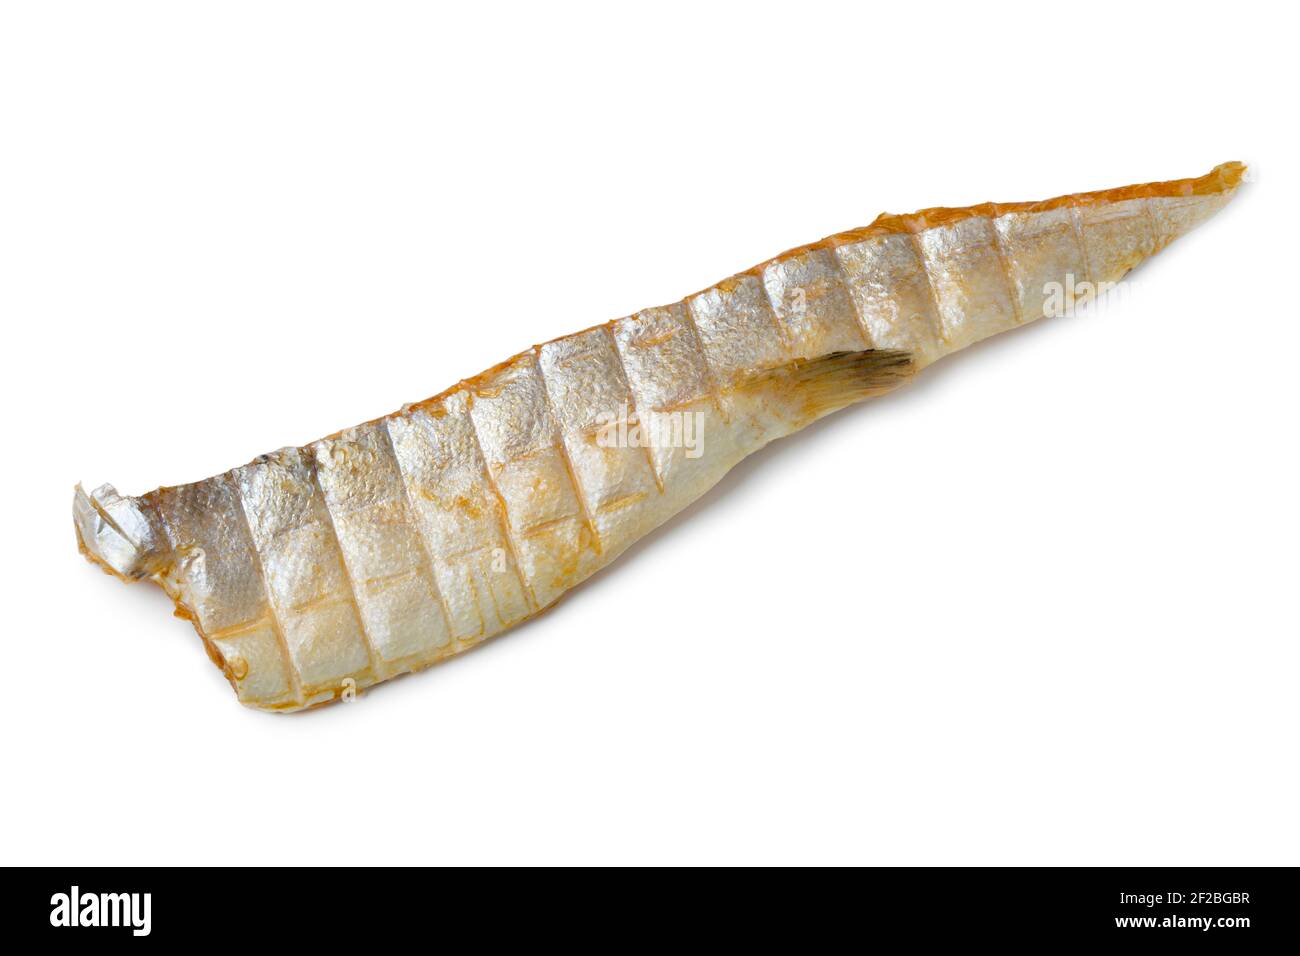 Une seule queue de saumon fumé sur la peau isolée sur le blanc arrière-plan Banque D'Images